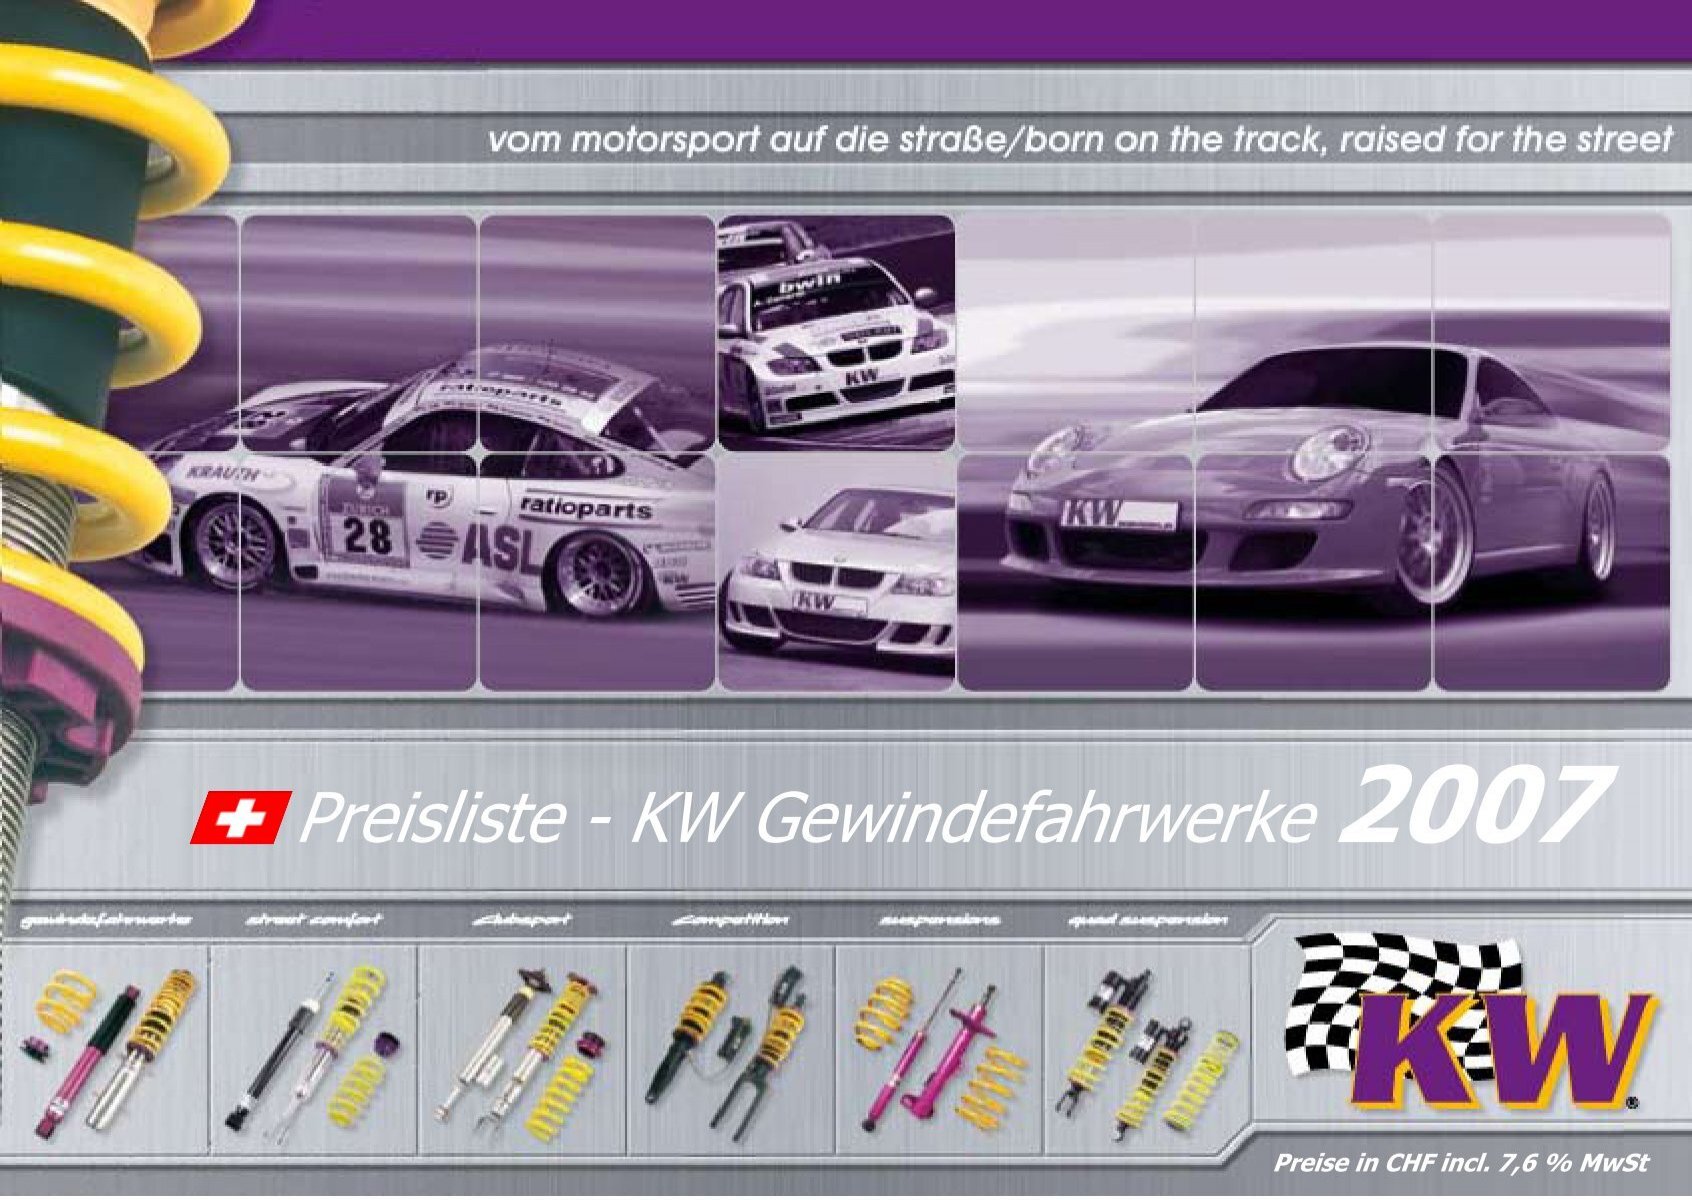 Preisliste - KW Gewindefahrwerke 2007 - Auto Master